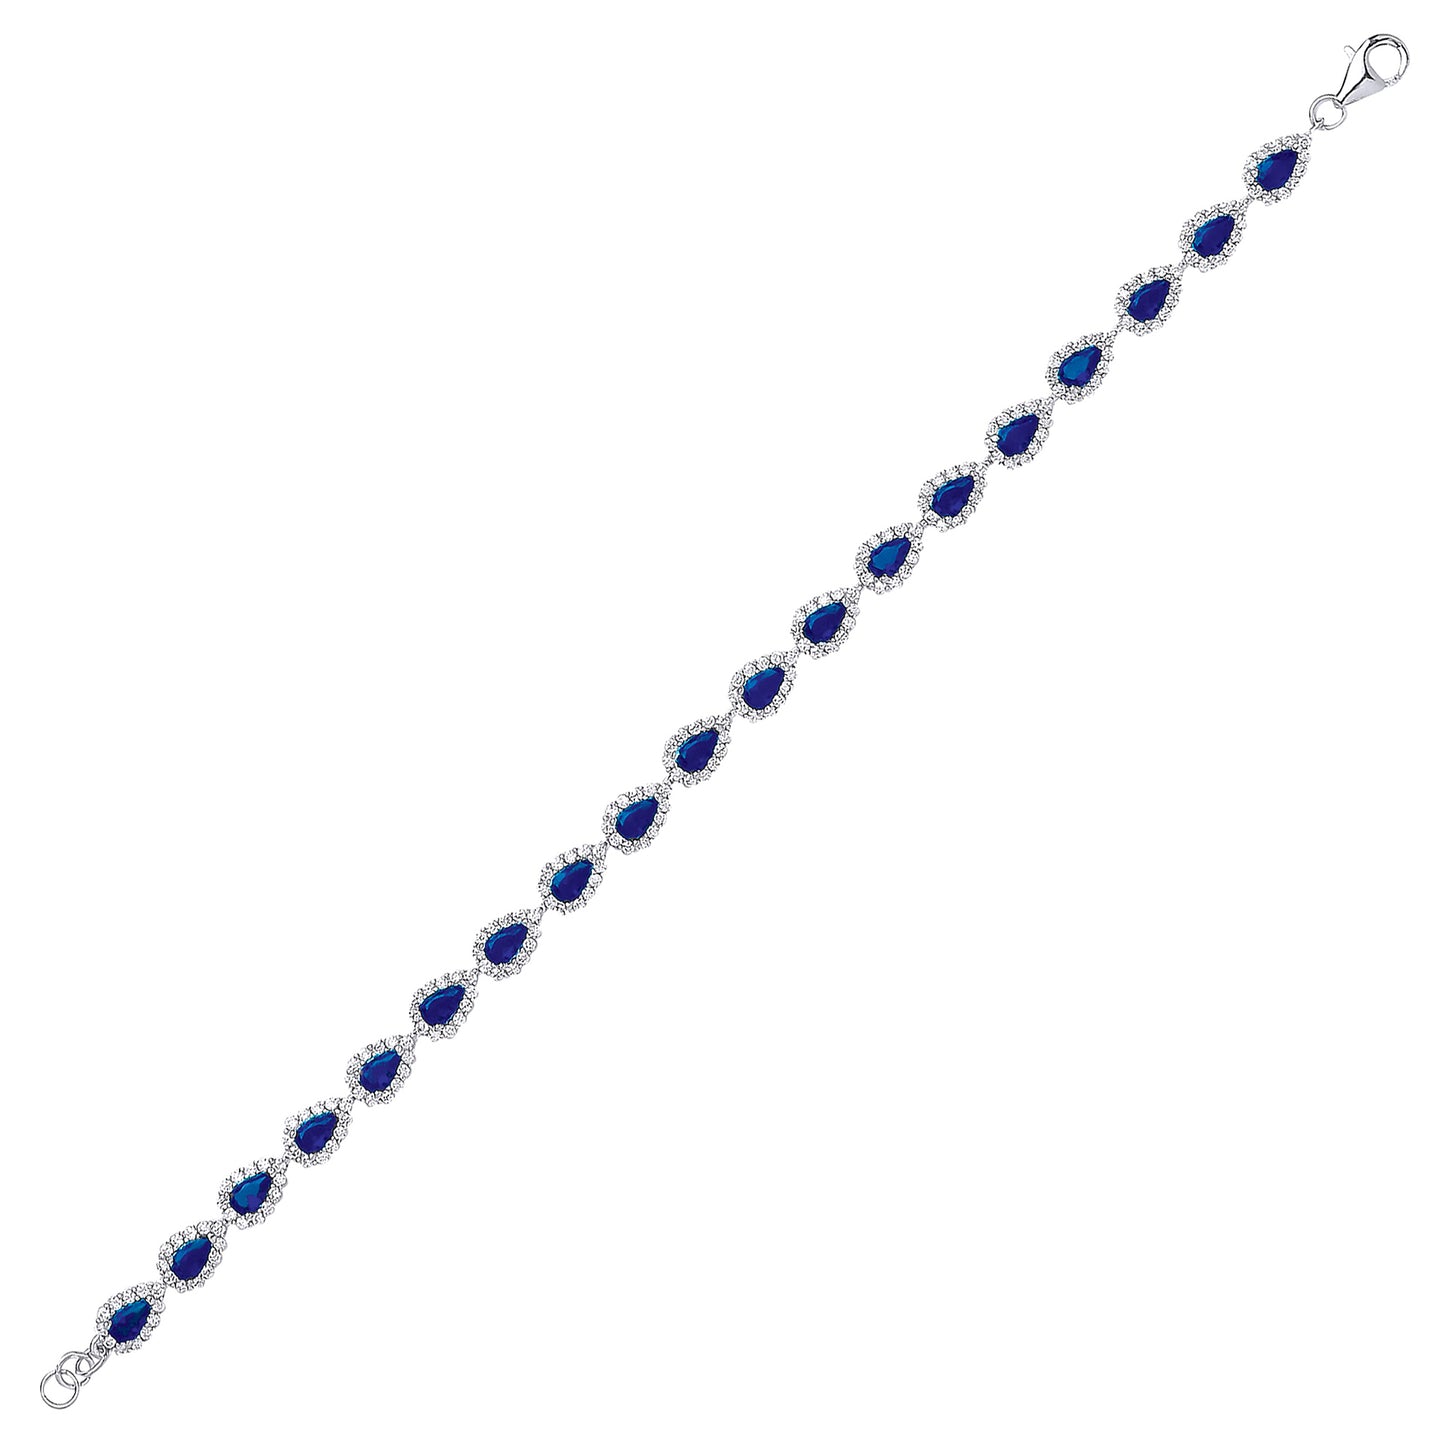 Silver  Blue Pear CZ Halo Tennis Bracelet 6mm 7 inch - GVB295SAP